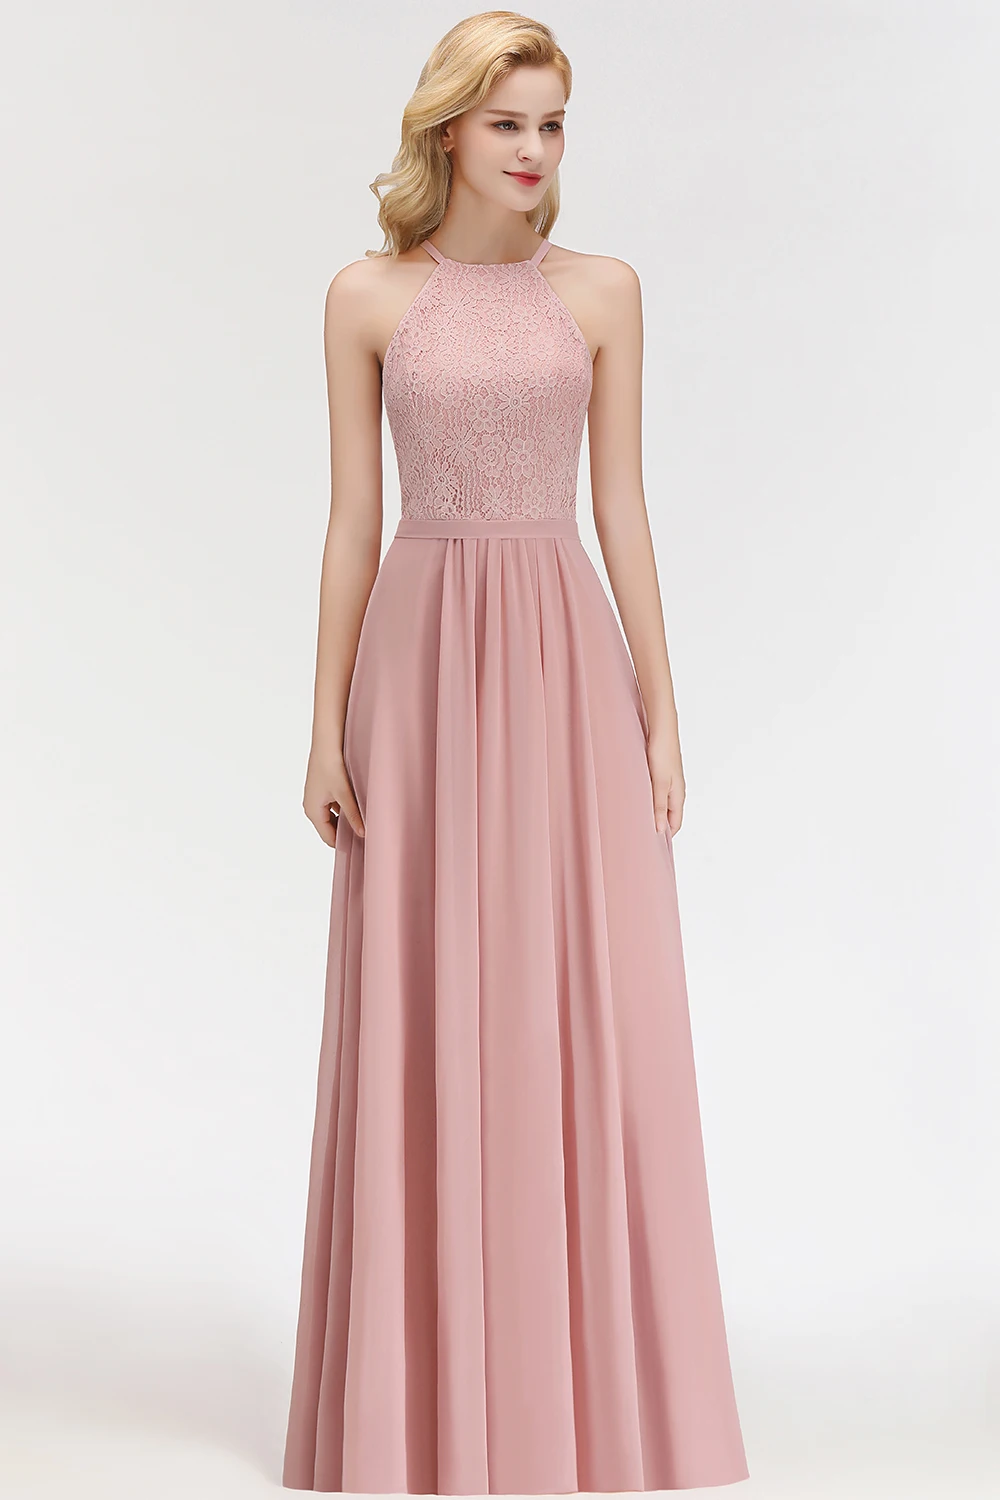 Очаровательное кружевное вечернее платье с бретелькой на шее Длинное Элегантное вечернее шифоновое платье платья пыльные розовые вечерние платья Vestido de Festa